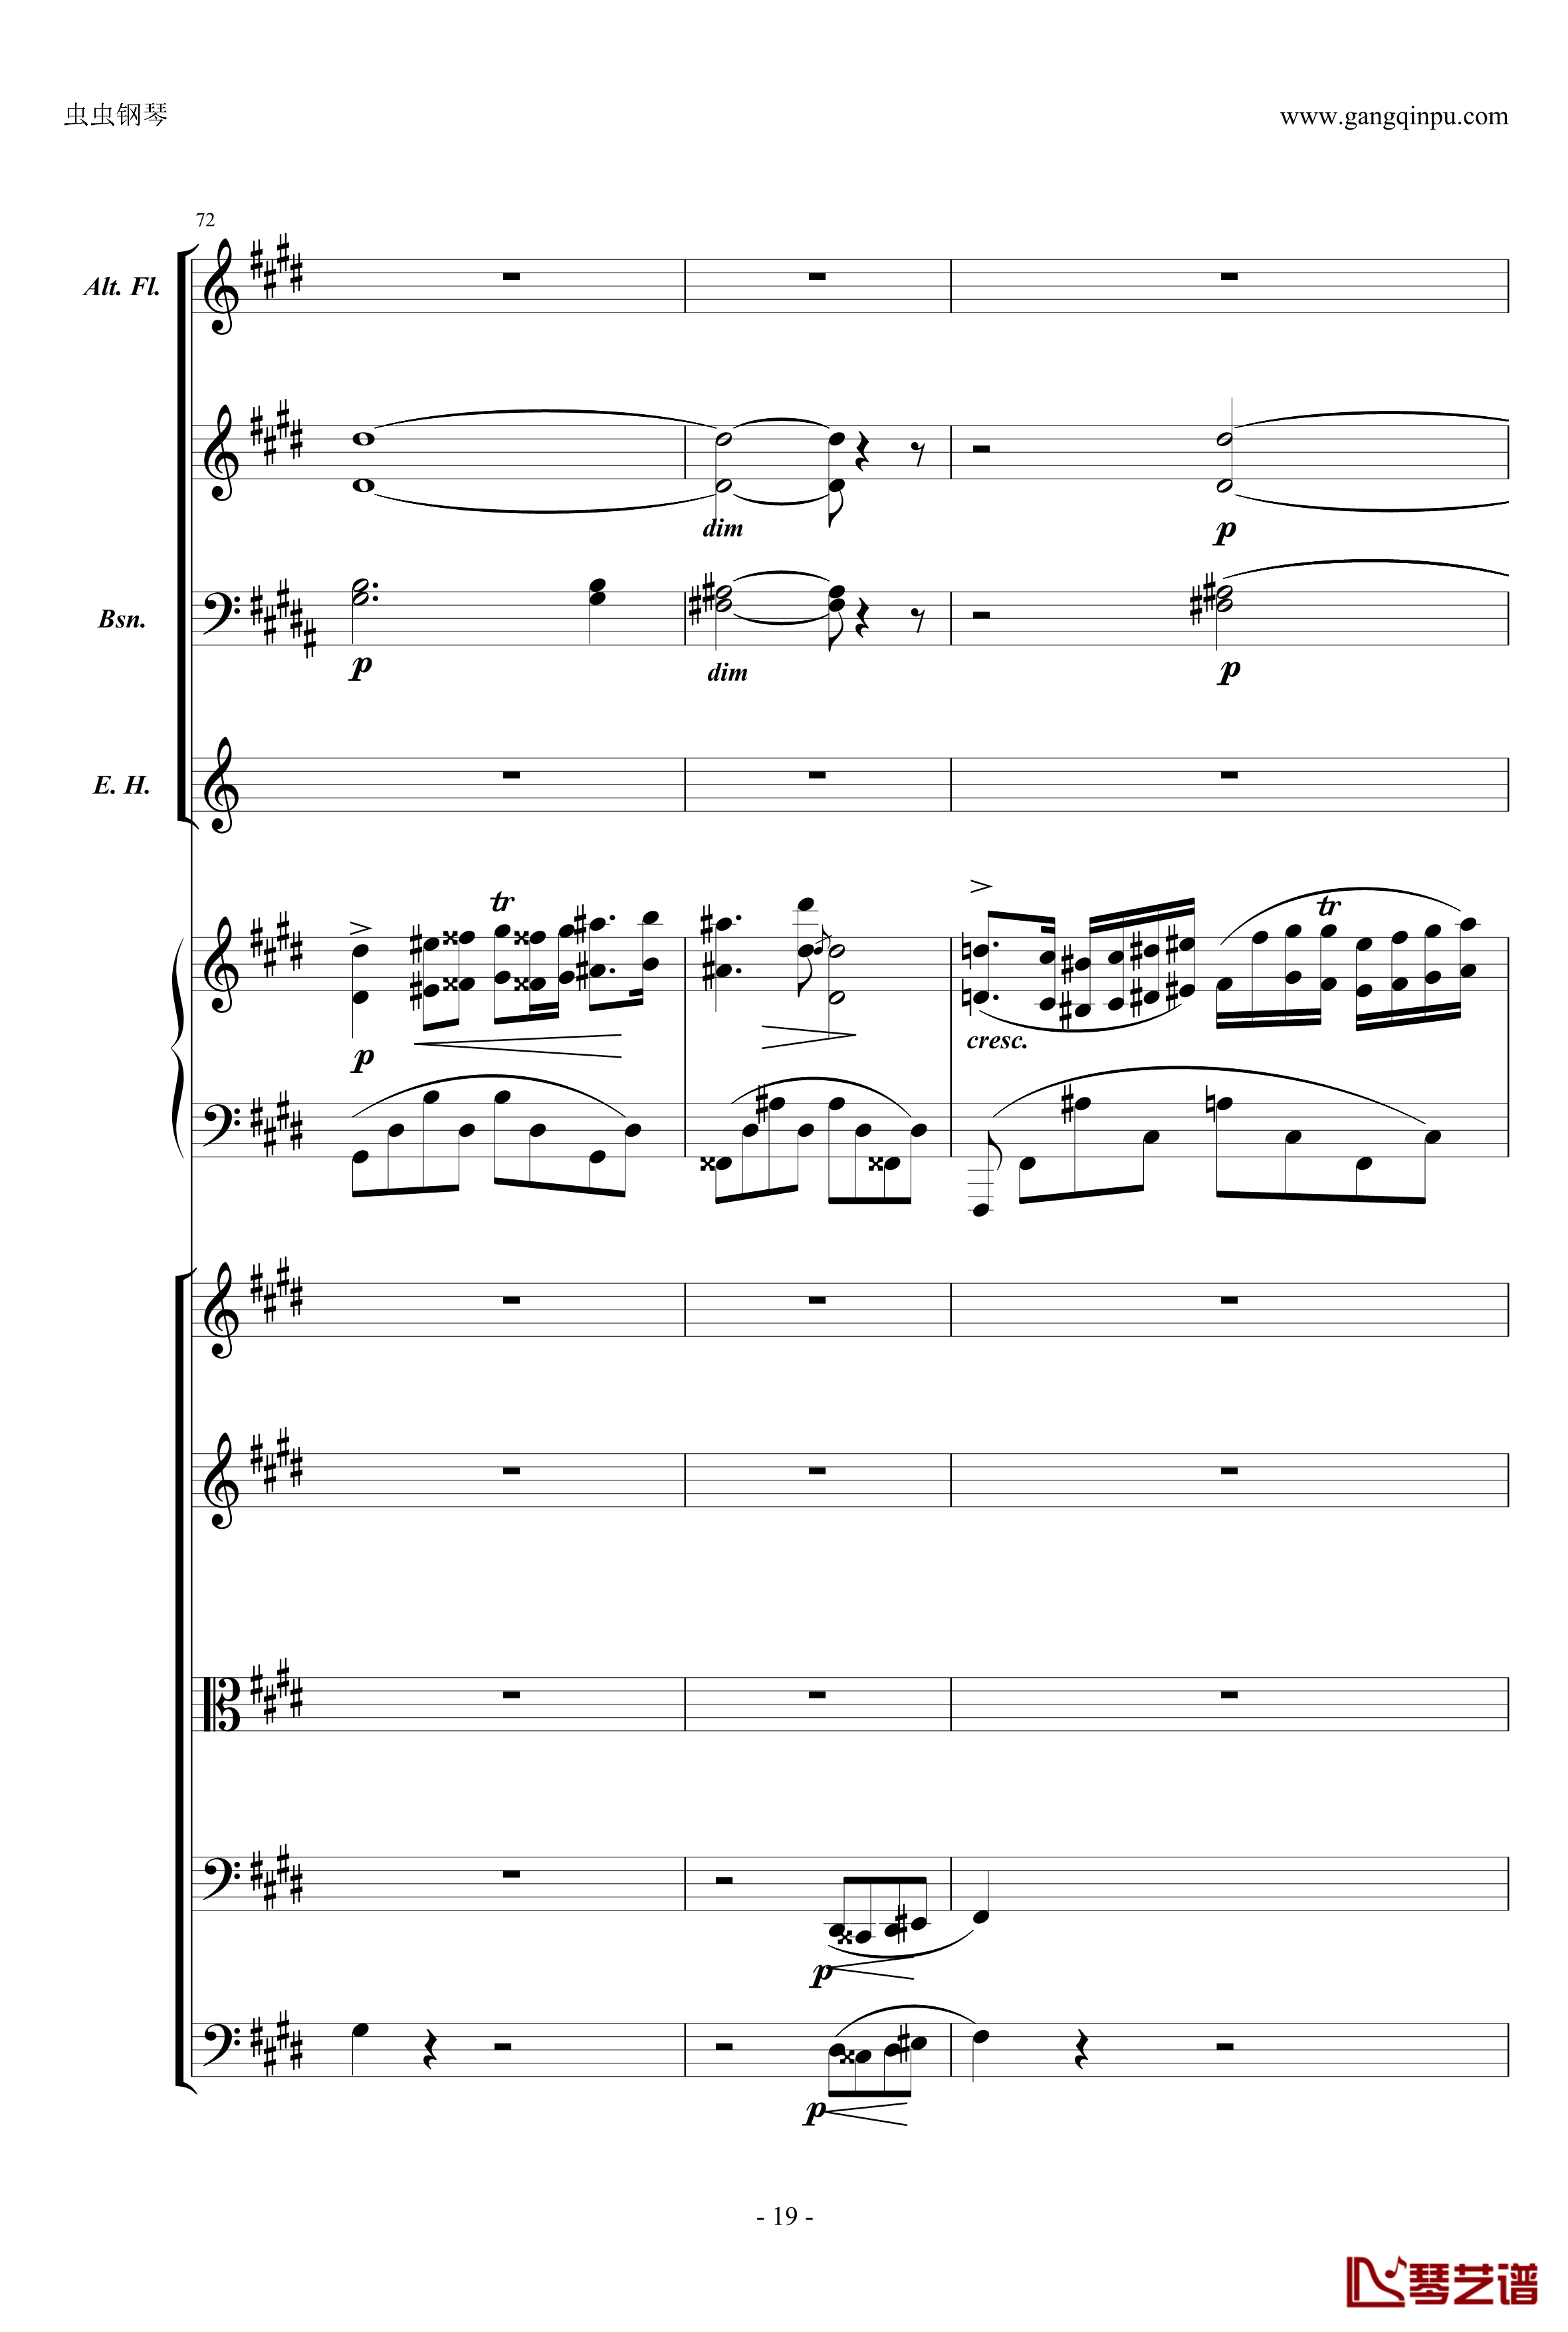 萧邦第一钢琴协奏曲第二乐章钢琴谱-肖邦-chopin19